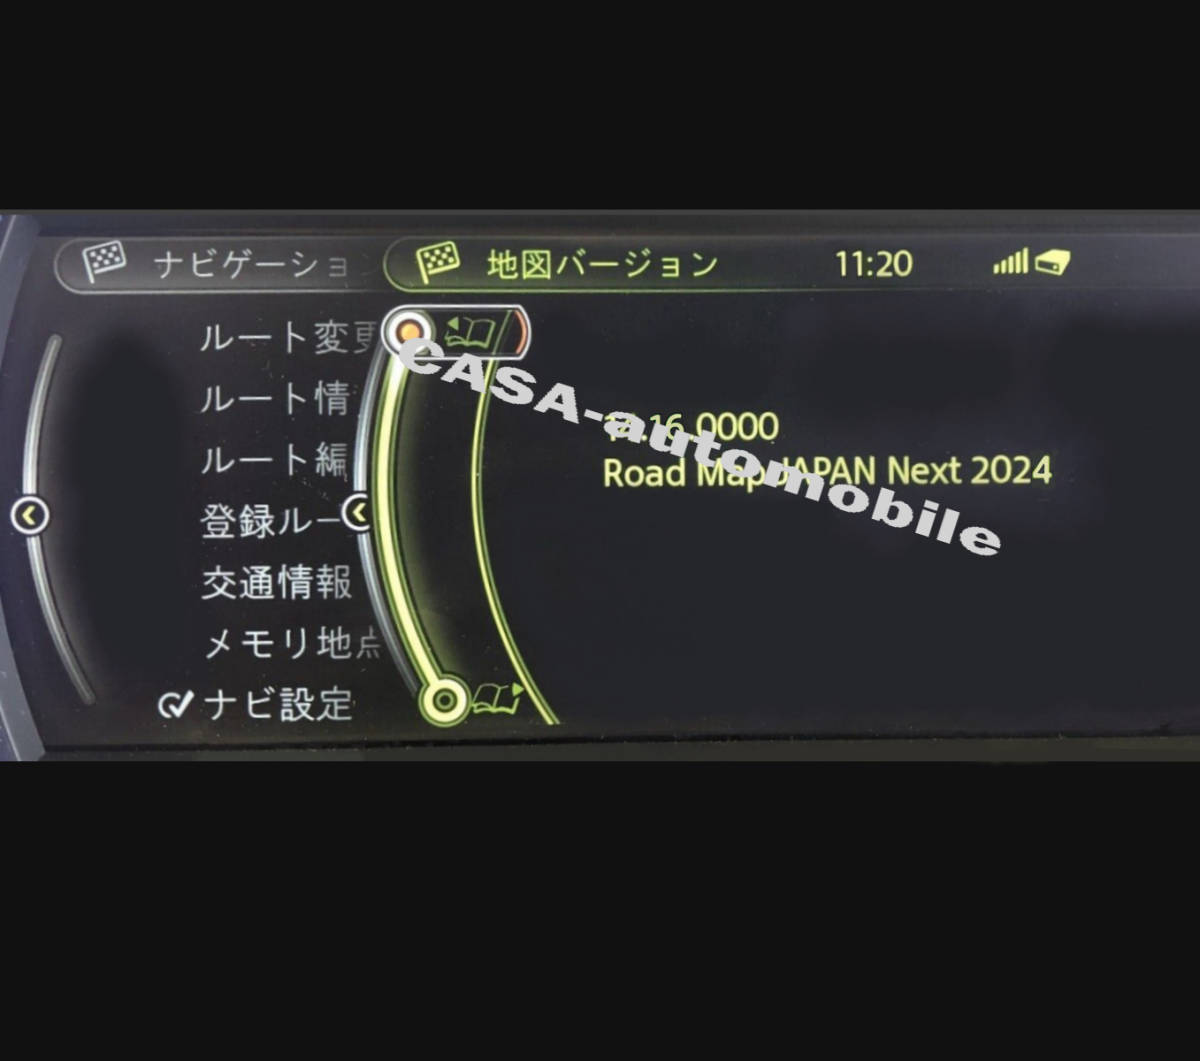 [ загрузка версия /FSC код есть ]BMW/Mini 2024 новейший версия карта обновление Road Map JAPAN NEXT(iDrive3 для ) карта выше te-to⑤.